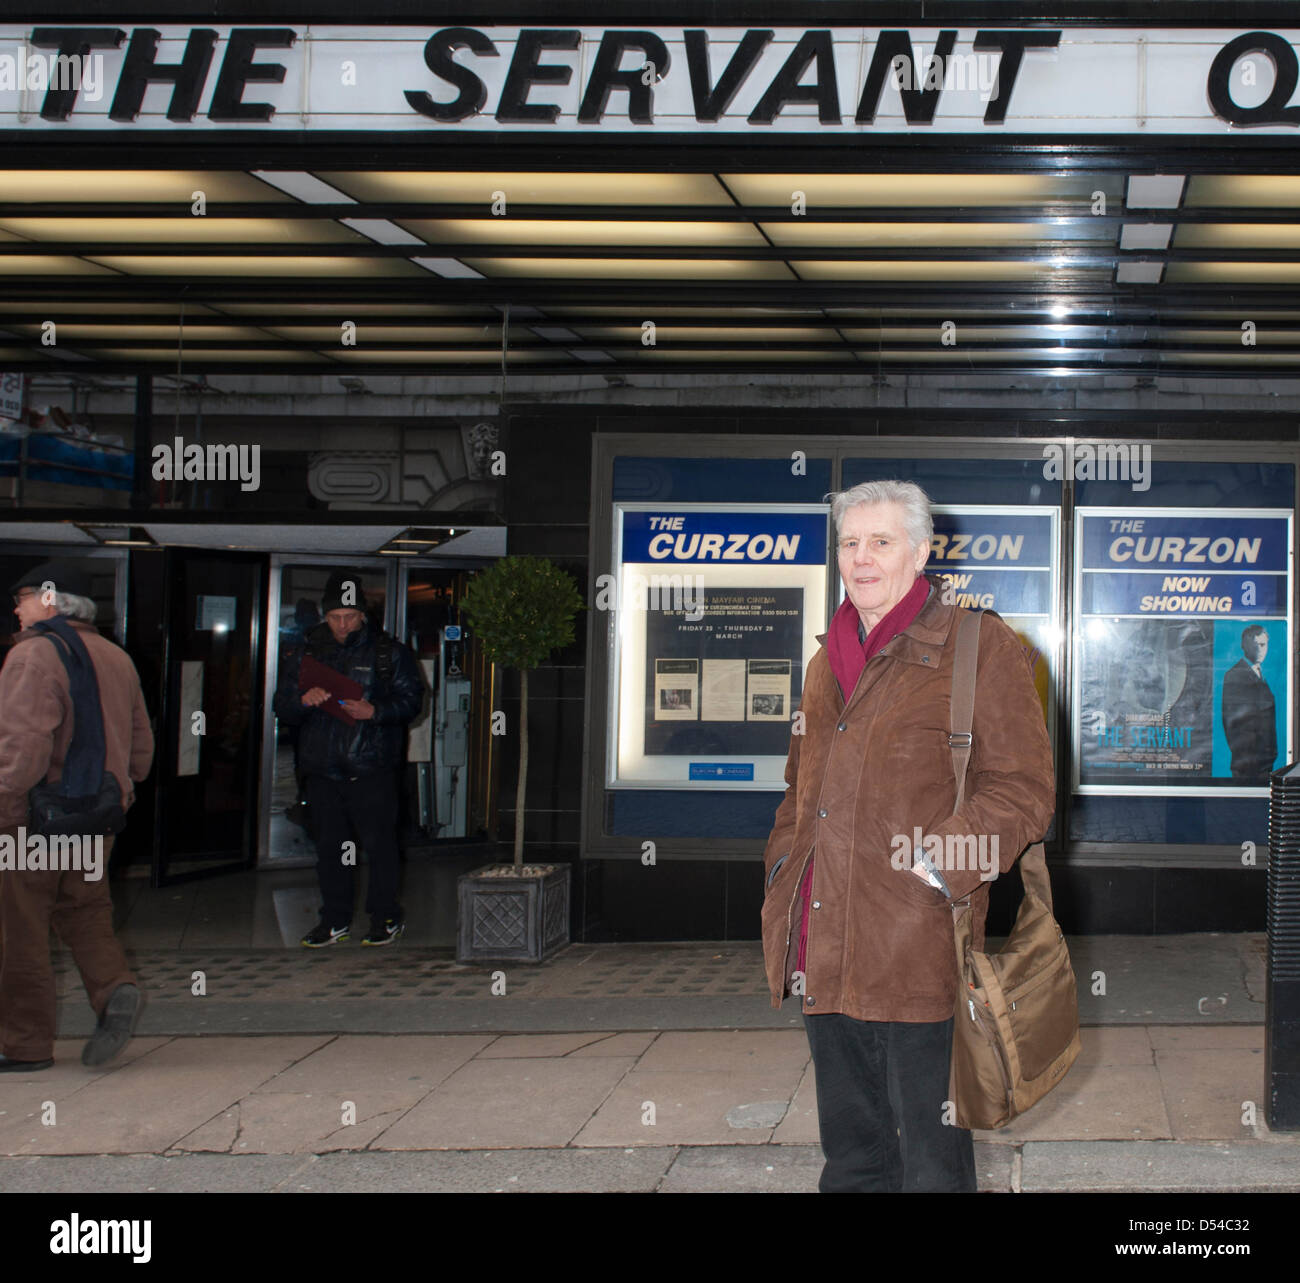 James Fox al servo, speciale proiezione plus Q&A con stelle a Curzon Mayfair. Londra, Regno Unito. Il 24 marzo 2013. Foto Stock